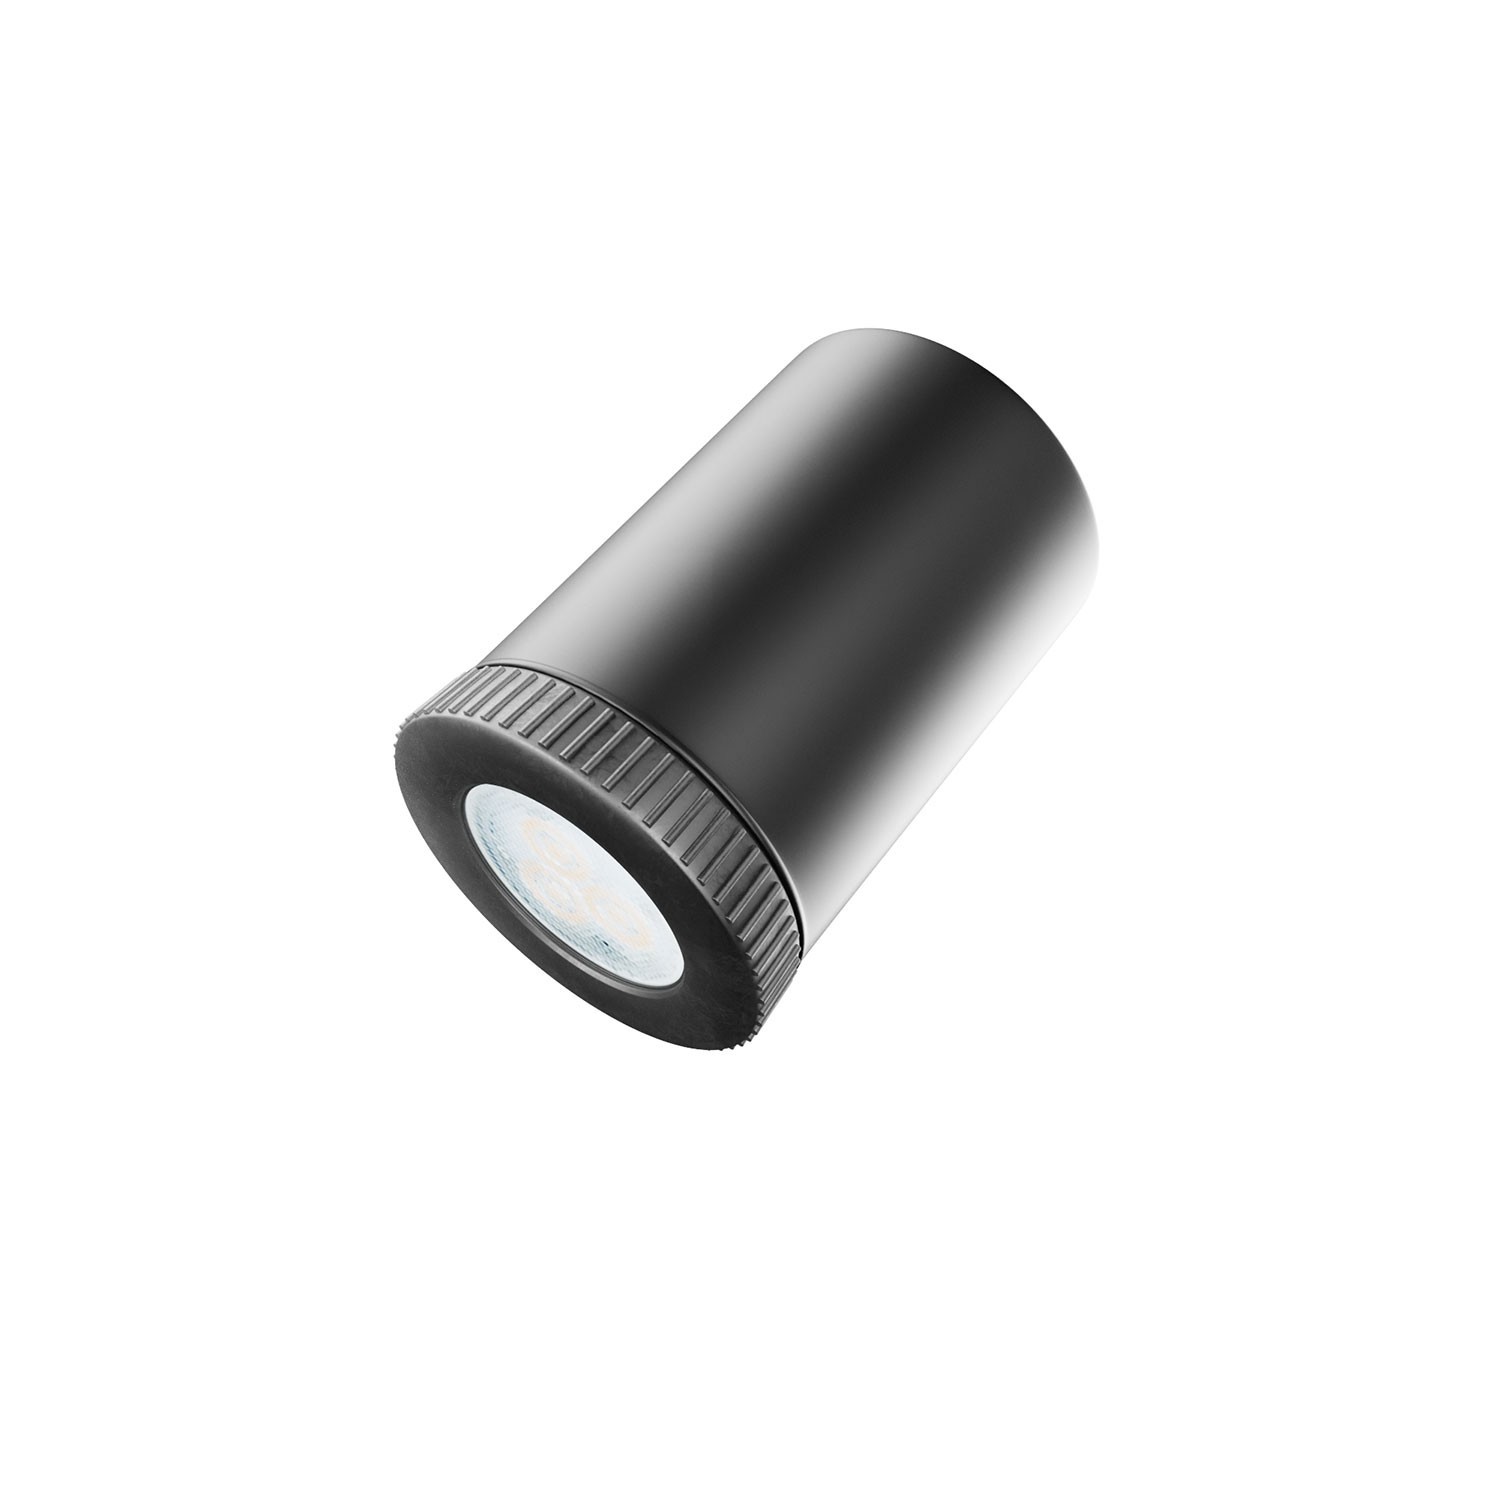 Mini Spotlight GU1d0-lampe med SnakeBis-ledninger